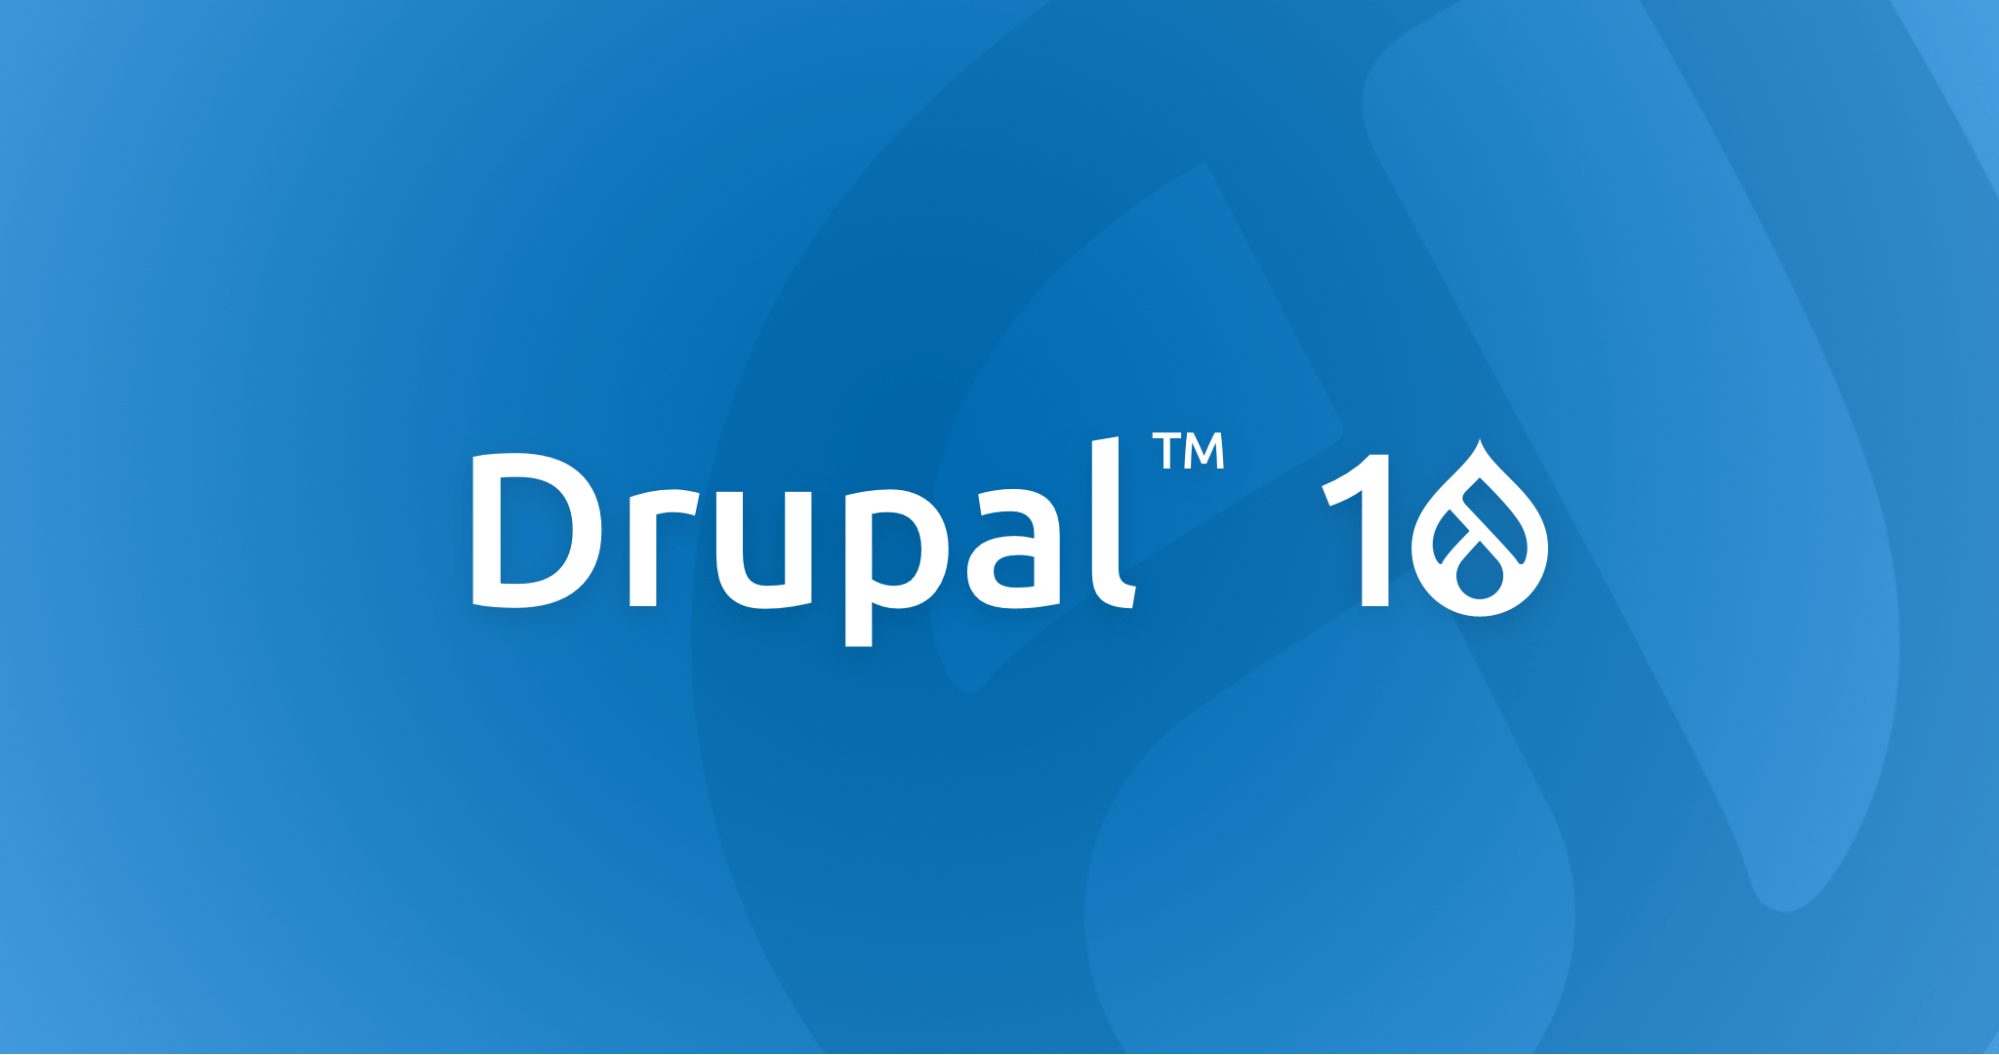 Drupal 10 logo on blue background